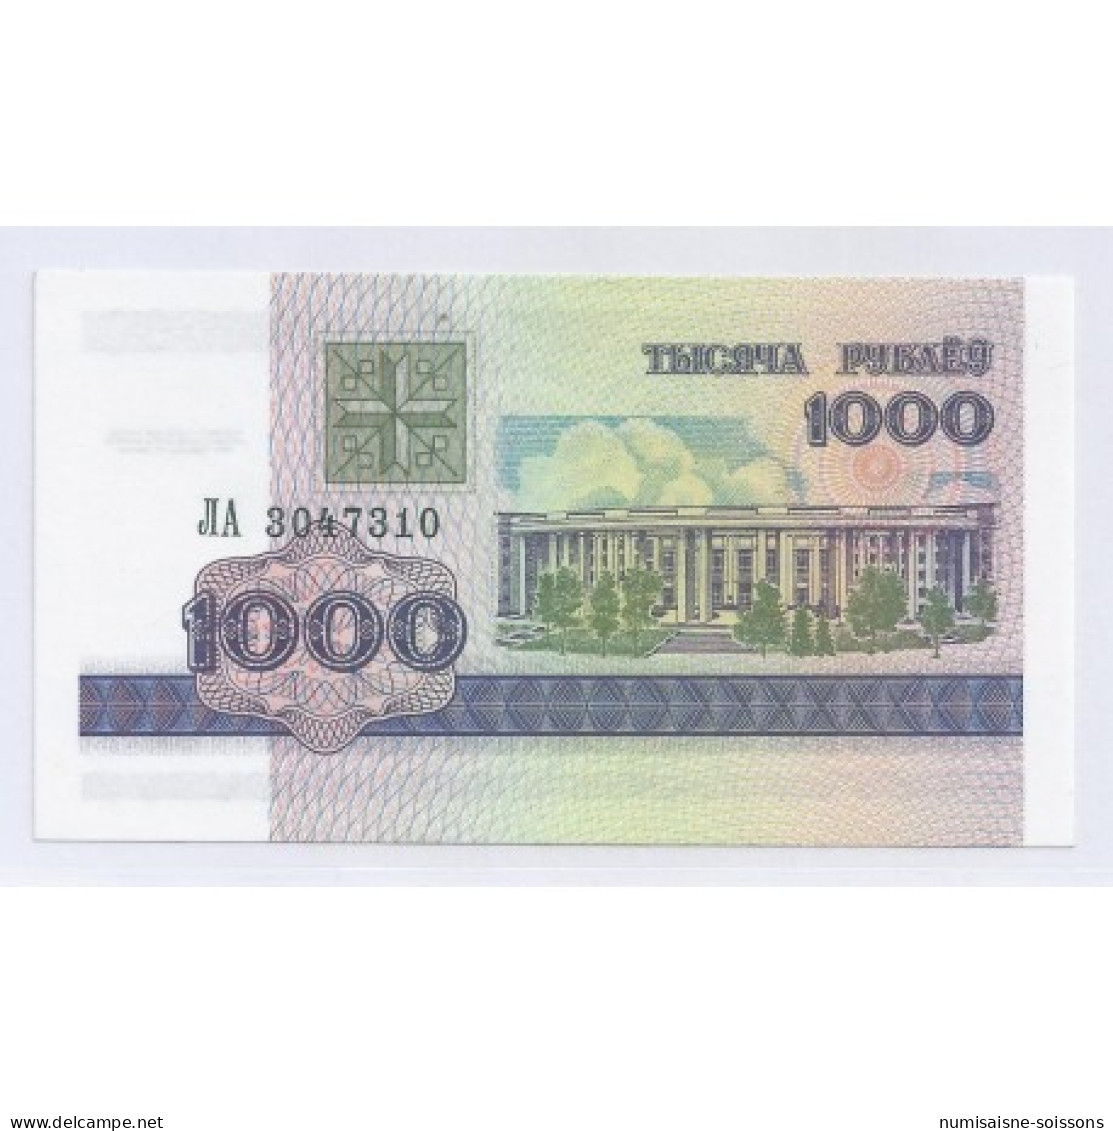 BIELORUSSIE - PICK 16 - 1 000 RUBLEI 1998 - NEUF - Belarus